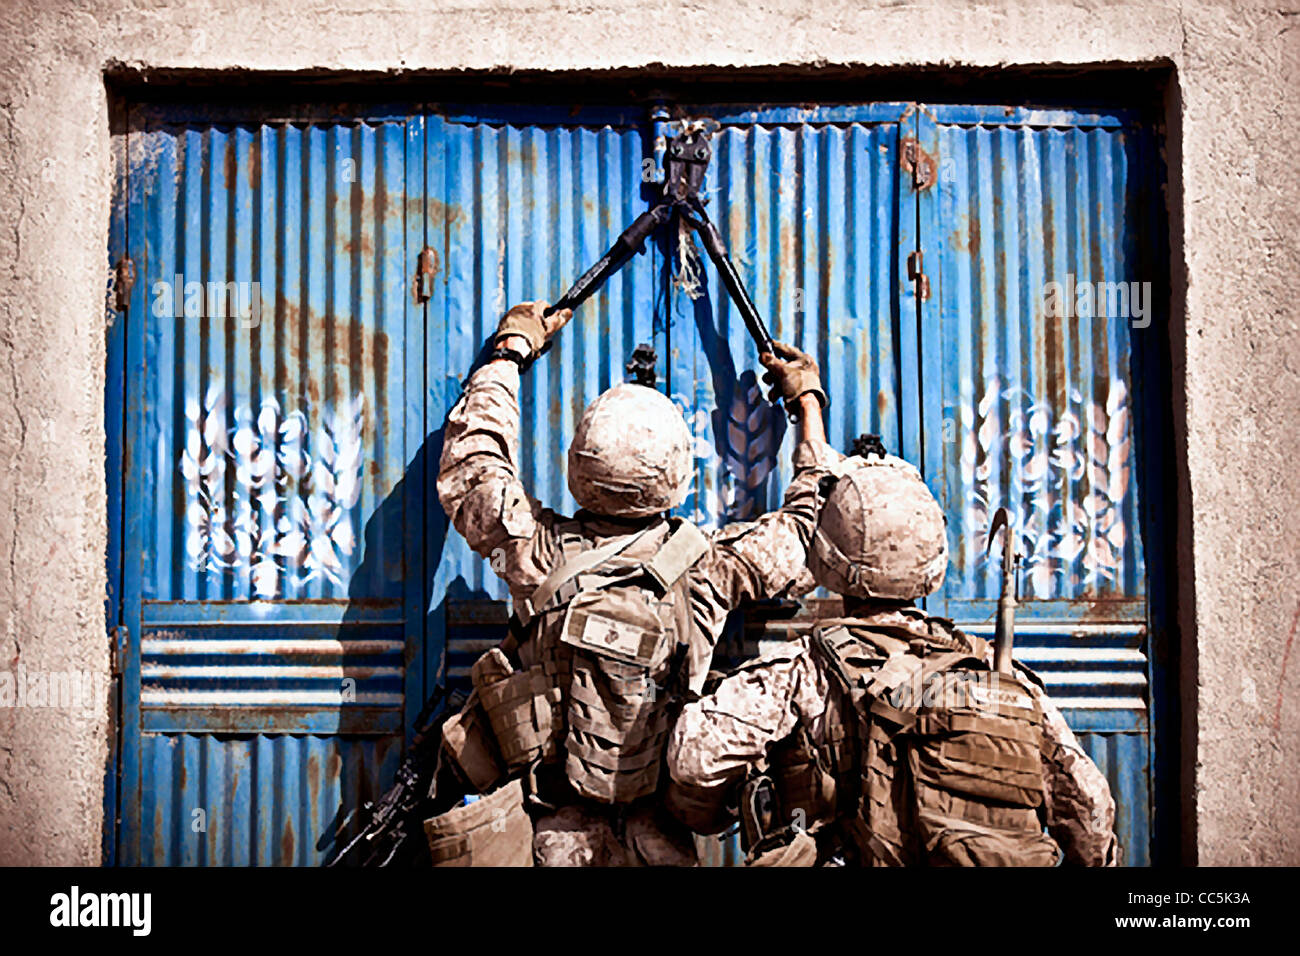 US-Marines aufschneiden, dass eine Tür für Afghan National Army Soldaten suchen Geschäfte für illegale Drogen und improvisierte explosive Gerätekomponenten während Betrieb Sandman 28. Dezember 2011 in Safar Basar, Afghanistan. Stockfoto